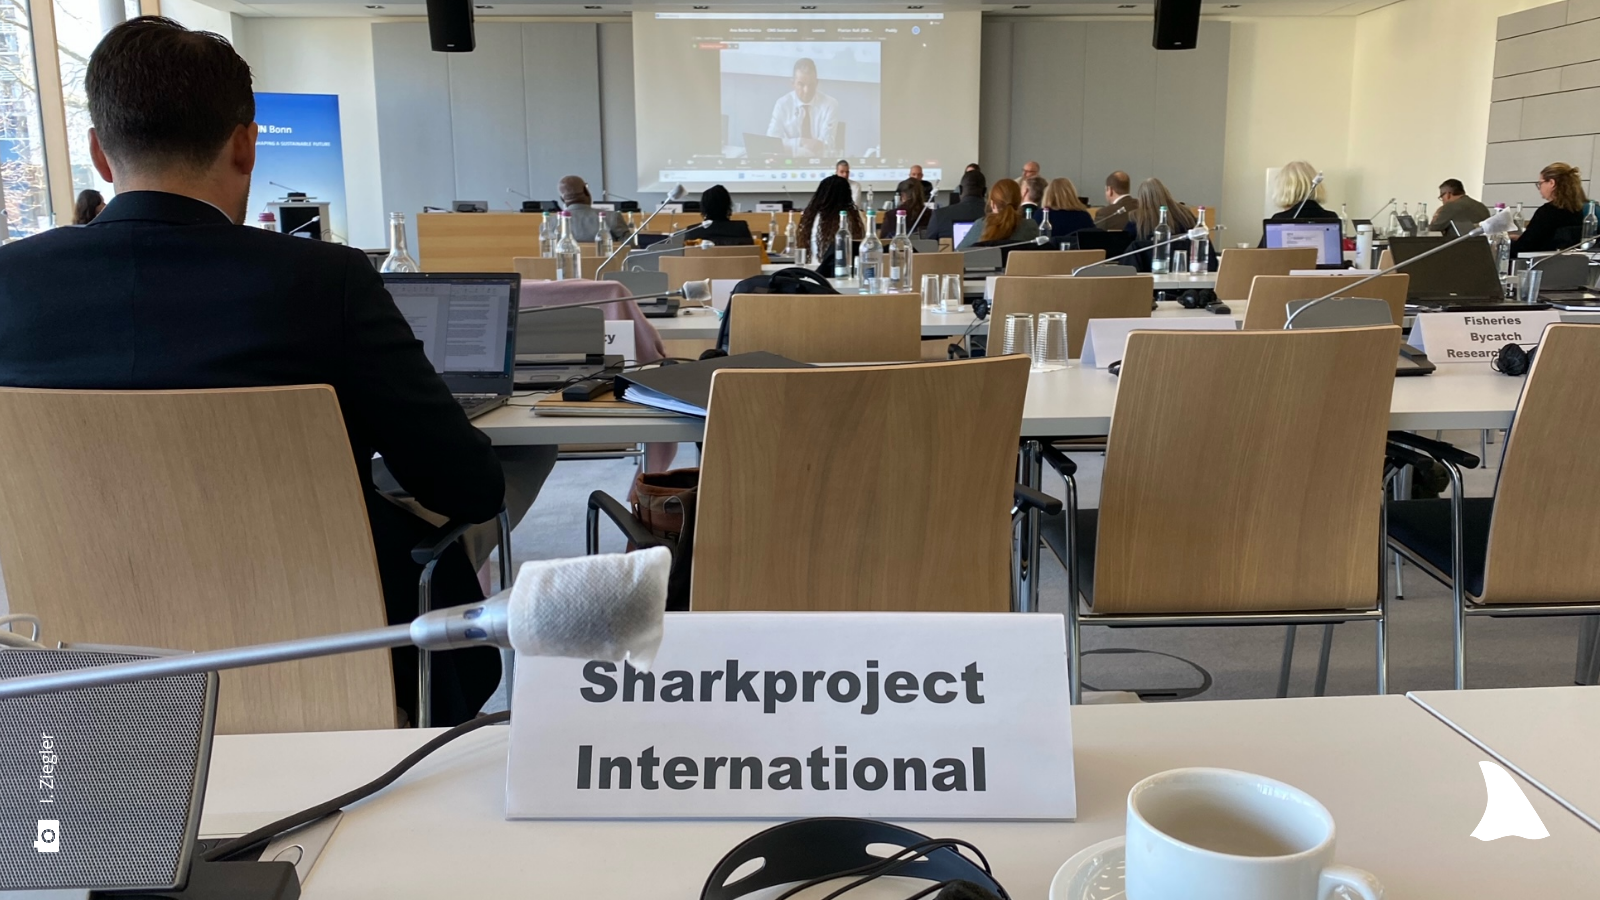 Ansicht des Vortragssaales von hinten, direkt vor der Kamera steht ein Schild mit "Sharkproject International" 